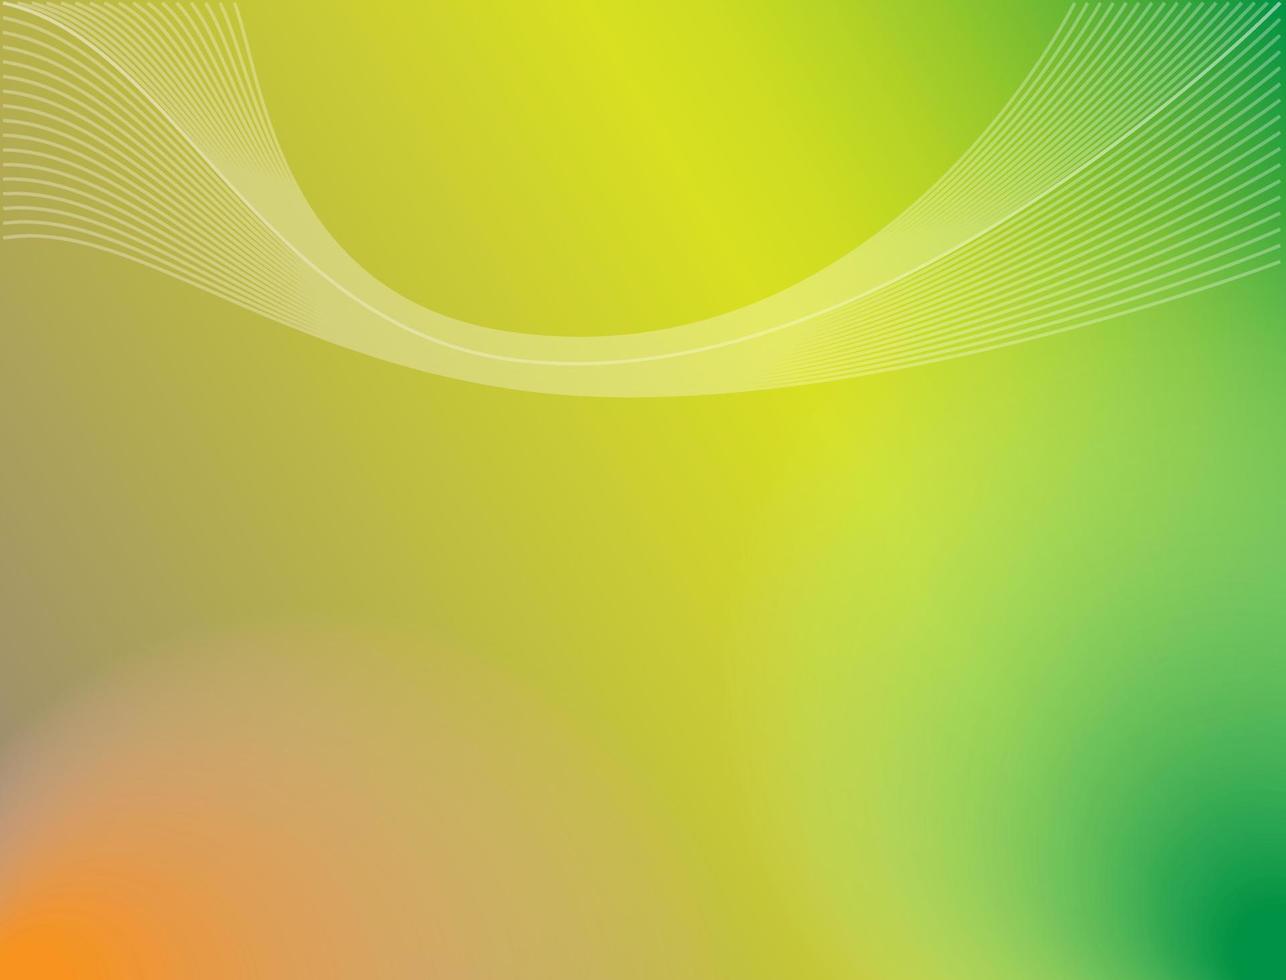 abstrakter hintergrund mit grün, gelb, orange verlaufsfarben vektor